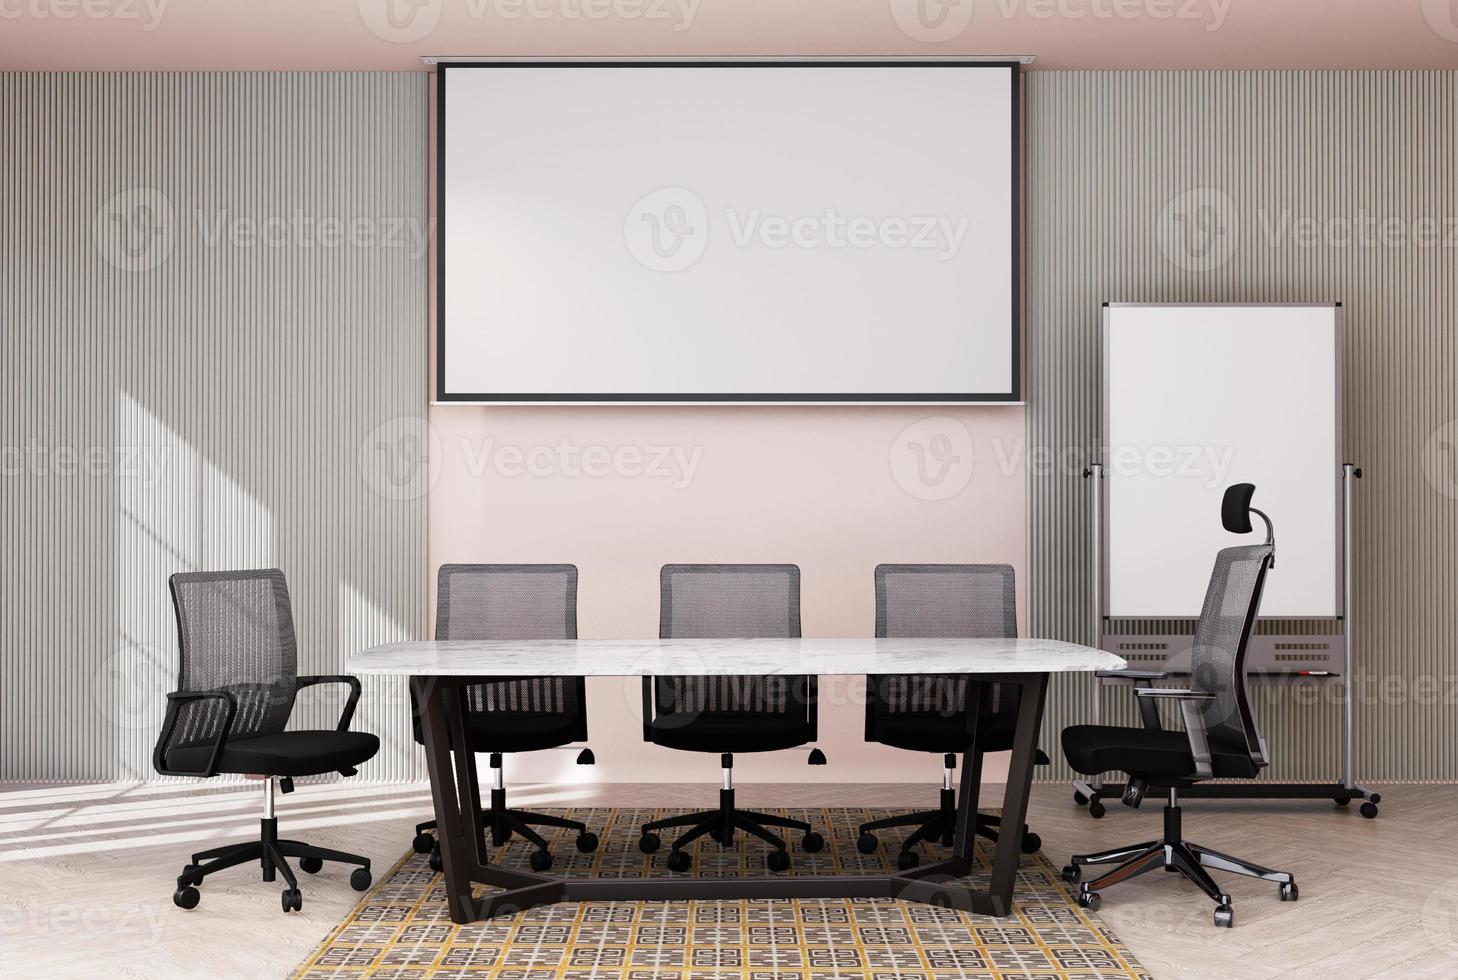 sala de reuniones en una oficina de centro de negocios moderna con proyector s foto